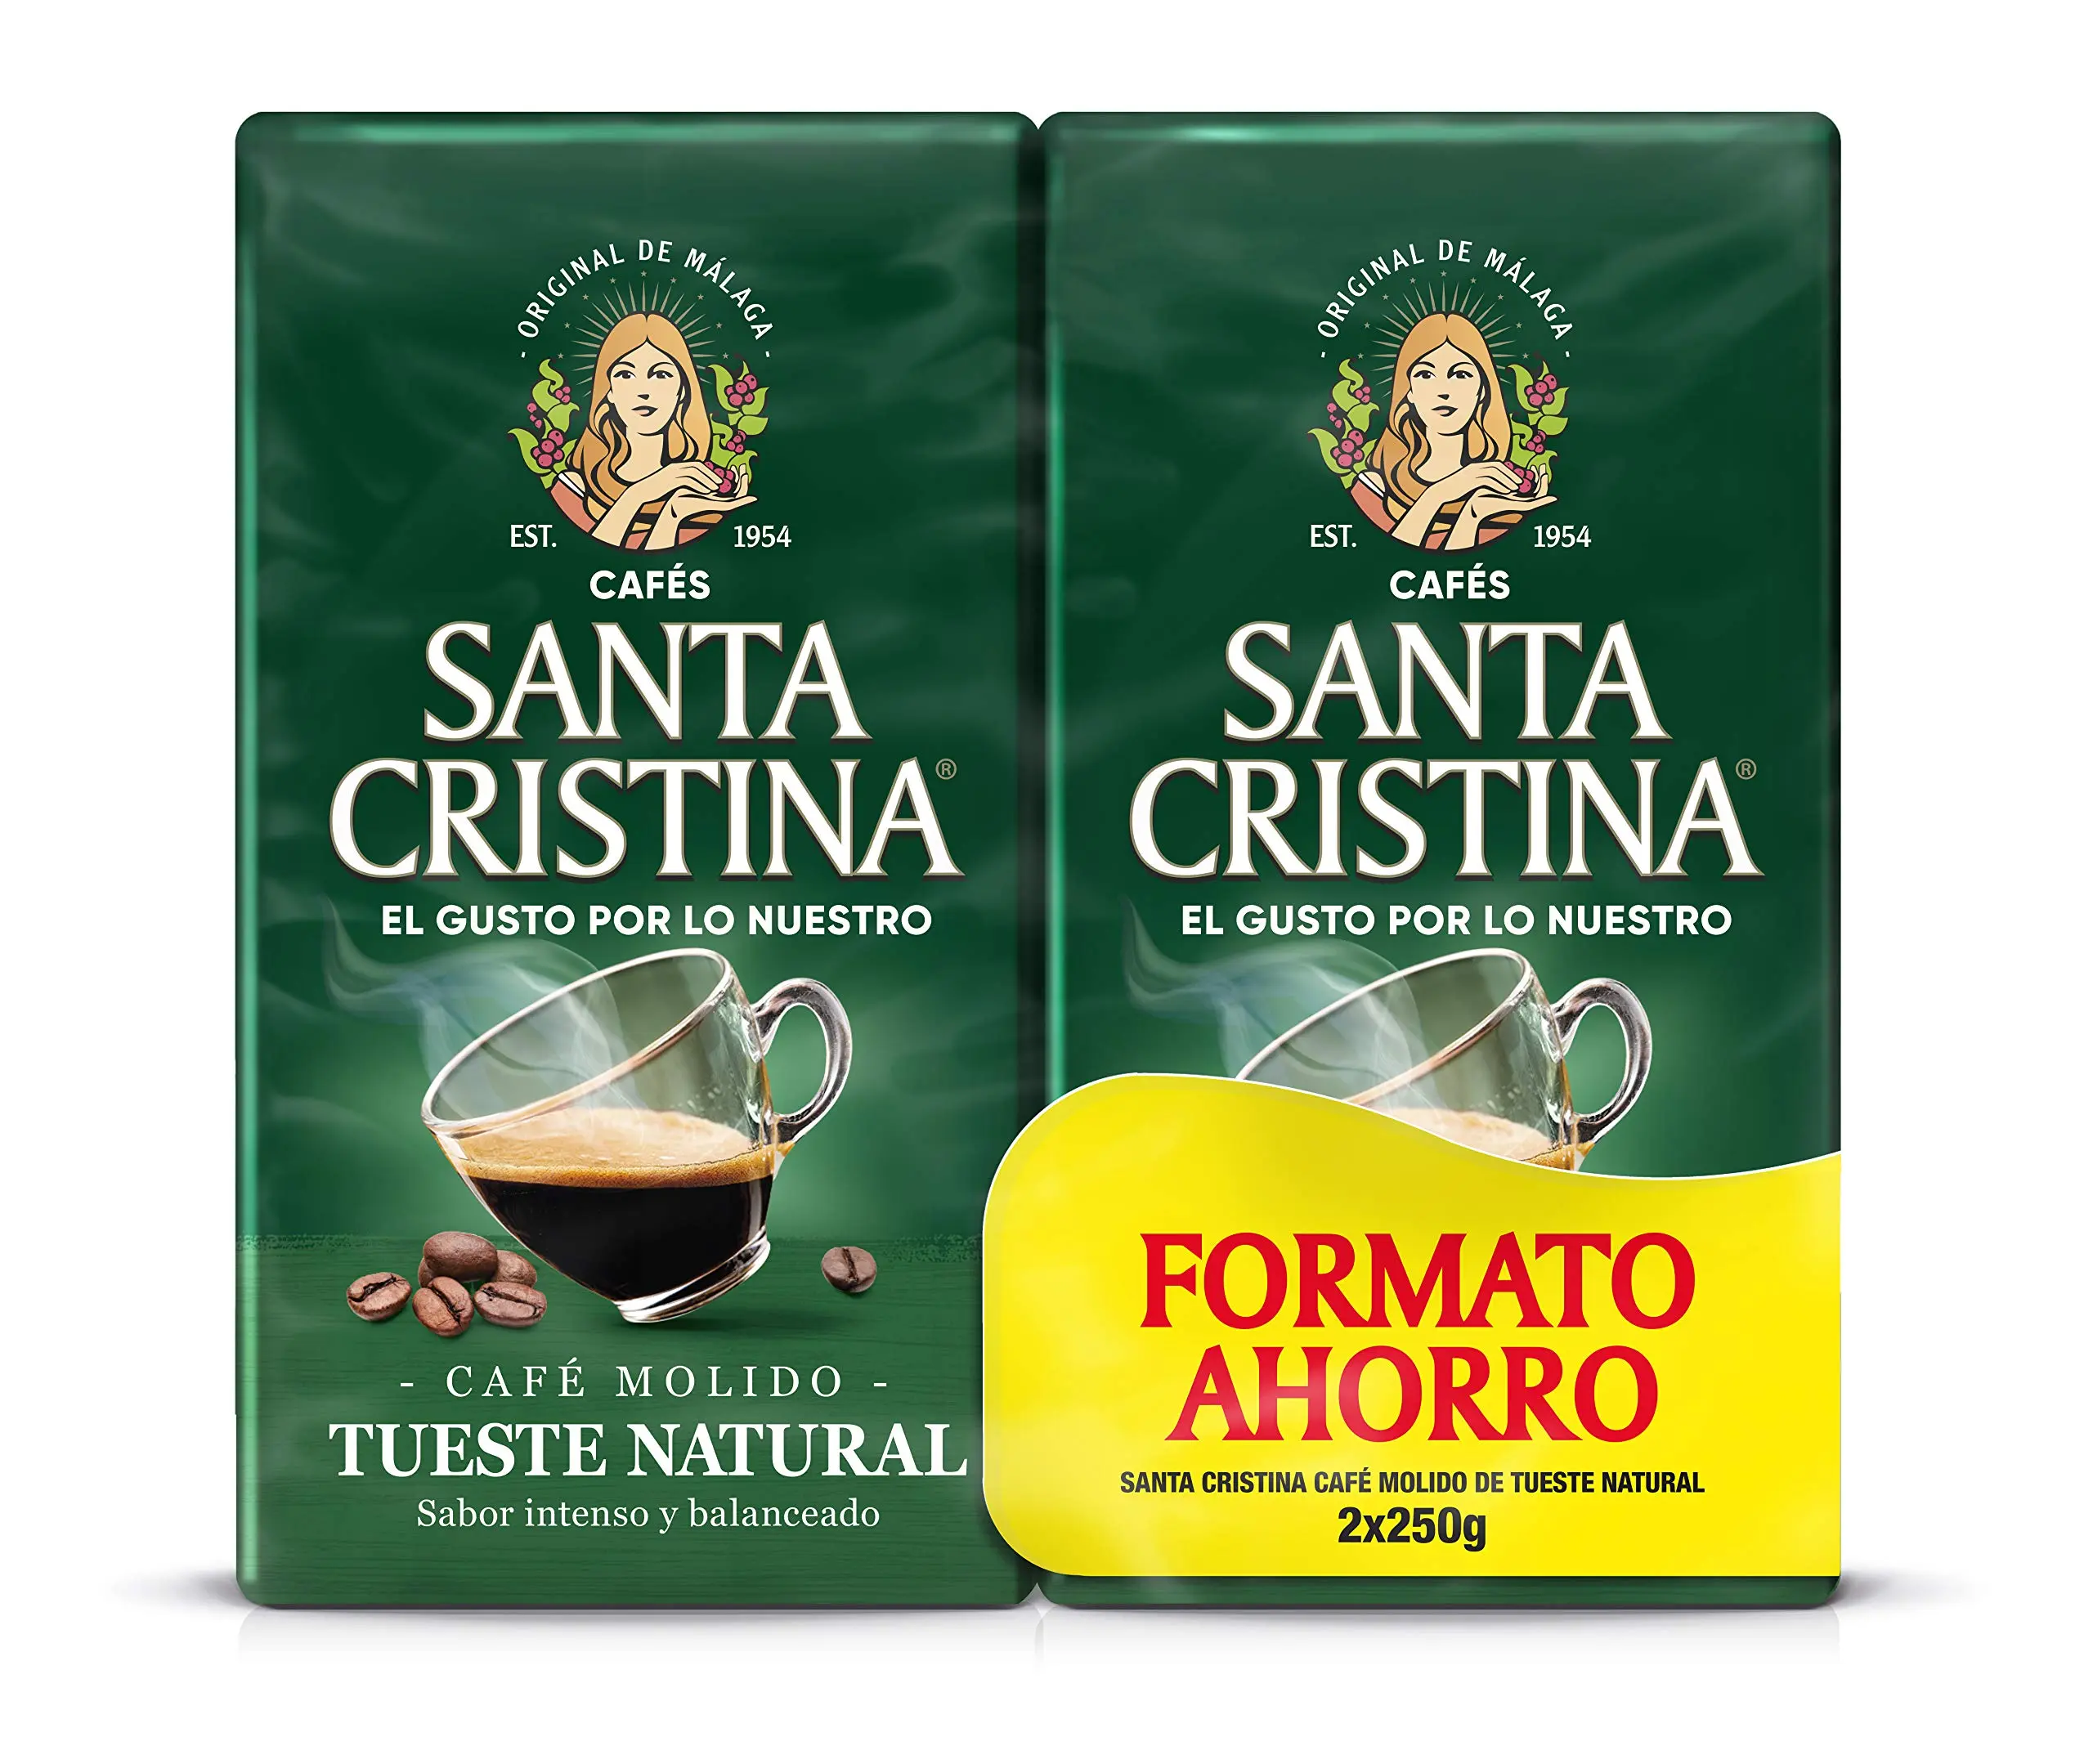 cafe santa cristina origen - Qué tipo de café es Santa Cristina